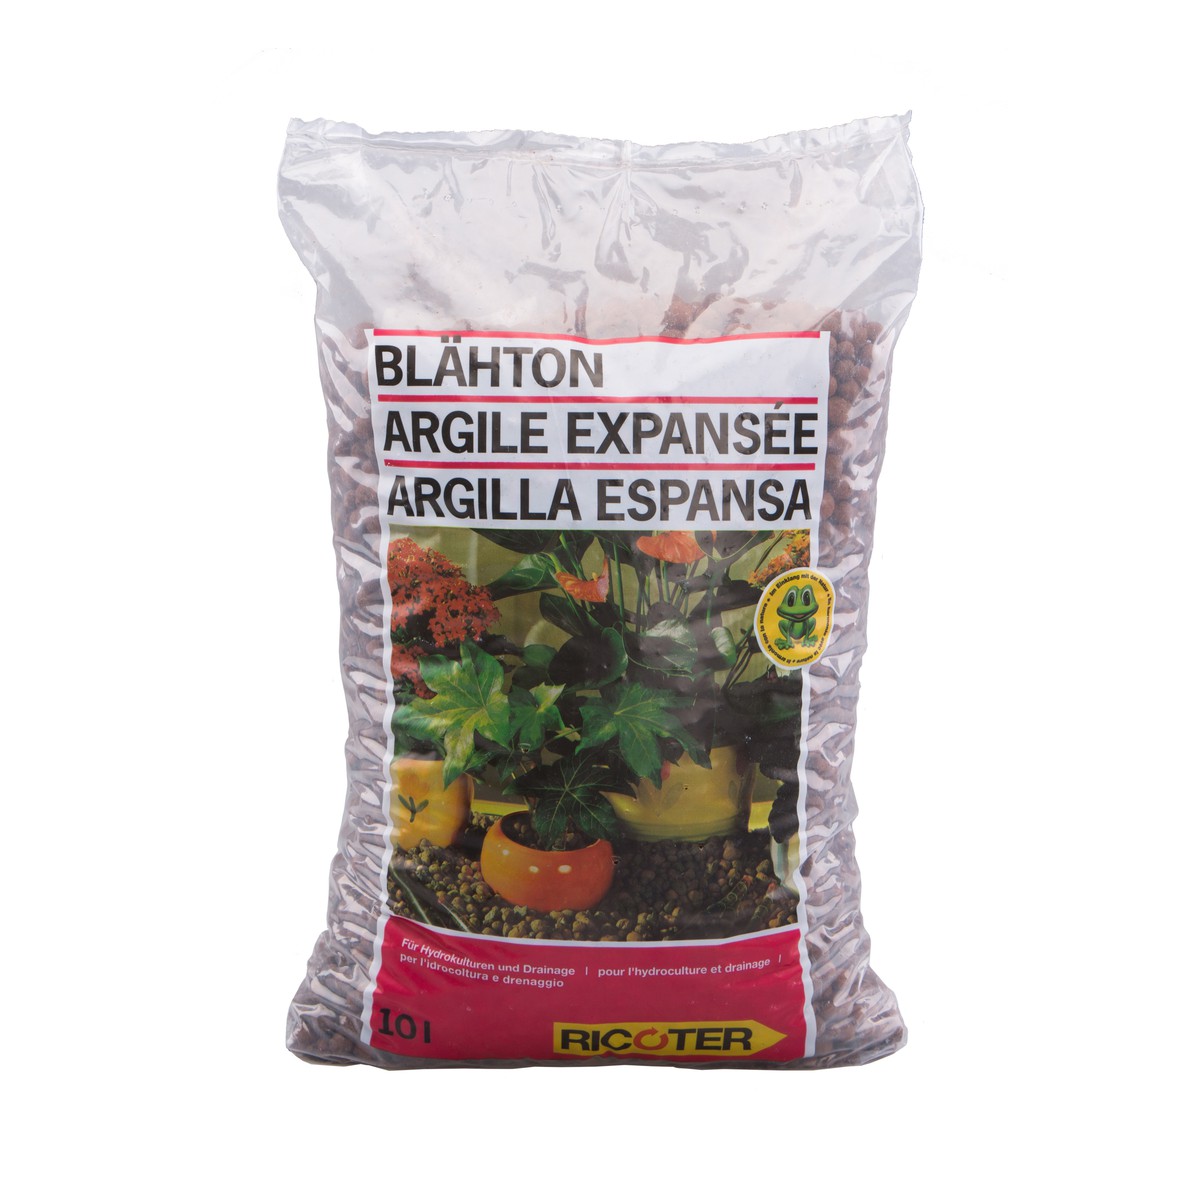 Ricoter  Argile expansee 8/16  sacs 10 litres  10L